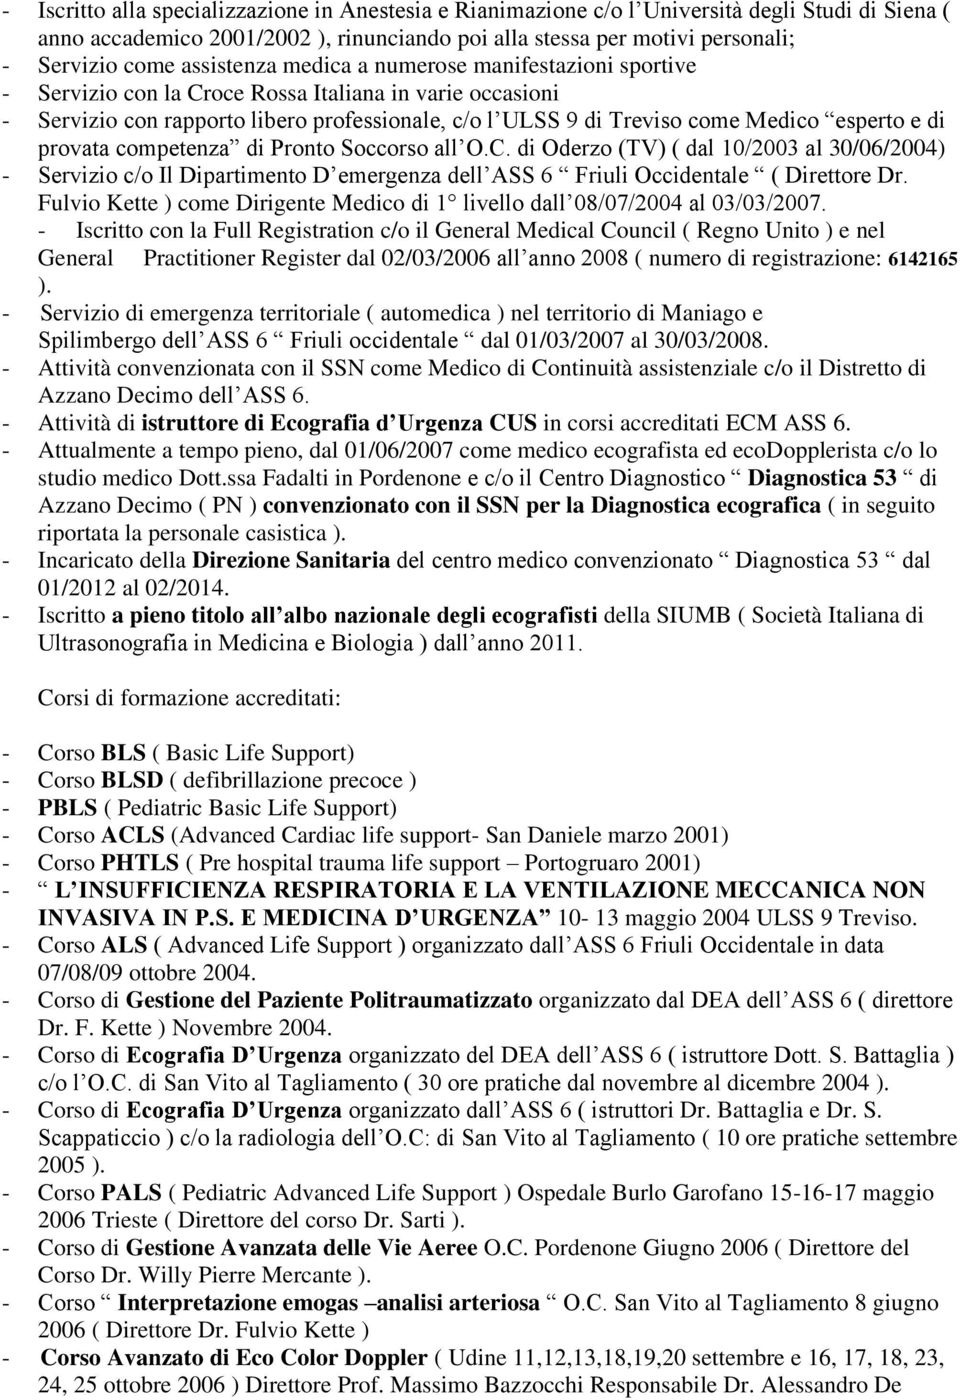 esperto e di provata competenza di Pronto Soccorso all O.C. di Oderzo (TV) ( dal 10/2003 al 30/06/2004) - Servizio c/o Il Dipartimento D emergenza dell ASS 6 Friuli Occidentale ( Direttore Dr.